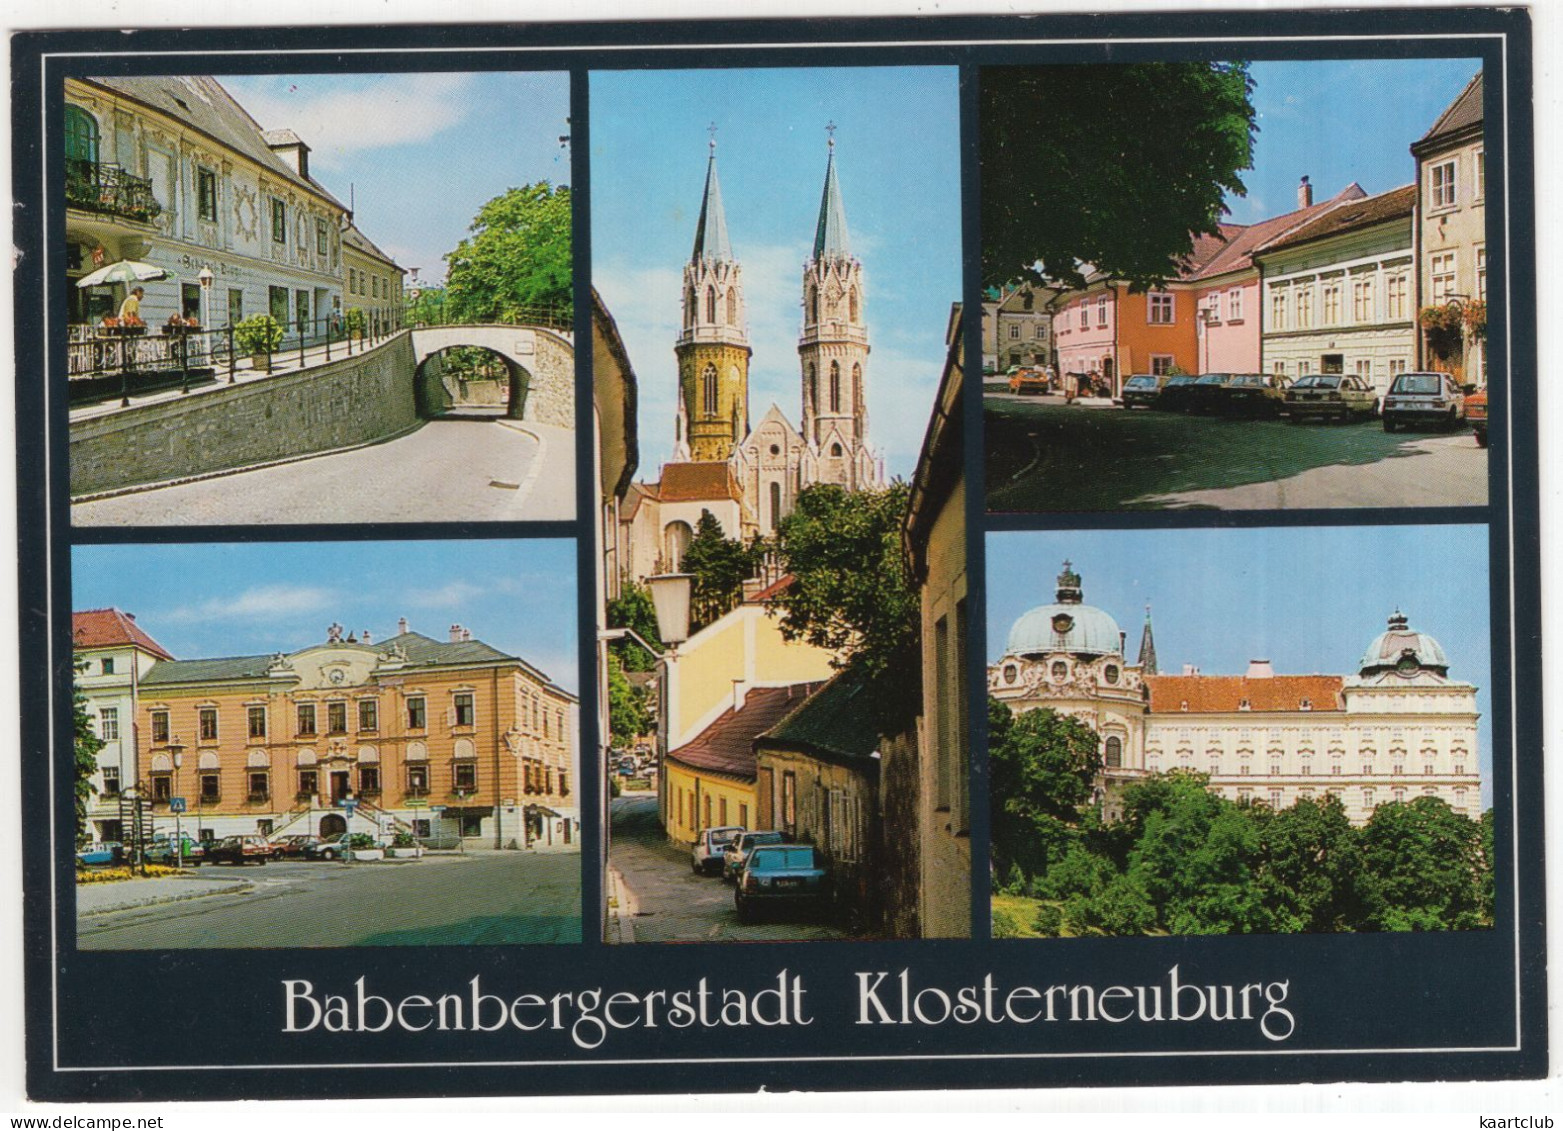 Babenbergerstadt Klosterneuburg - Hundskehle,Rathaus,Stiftskirche, Häuser Am Rathausplatz - (NÖ, Österreich/Austria) - Tulln